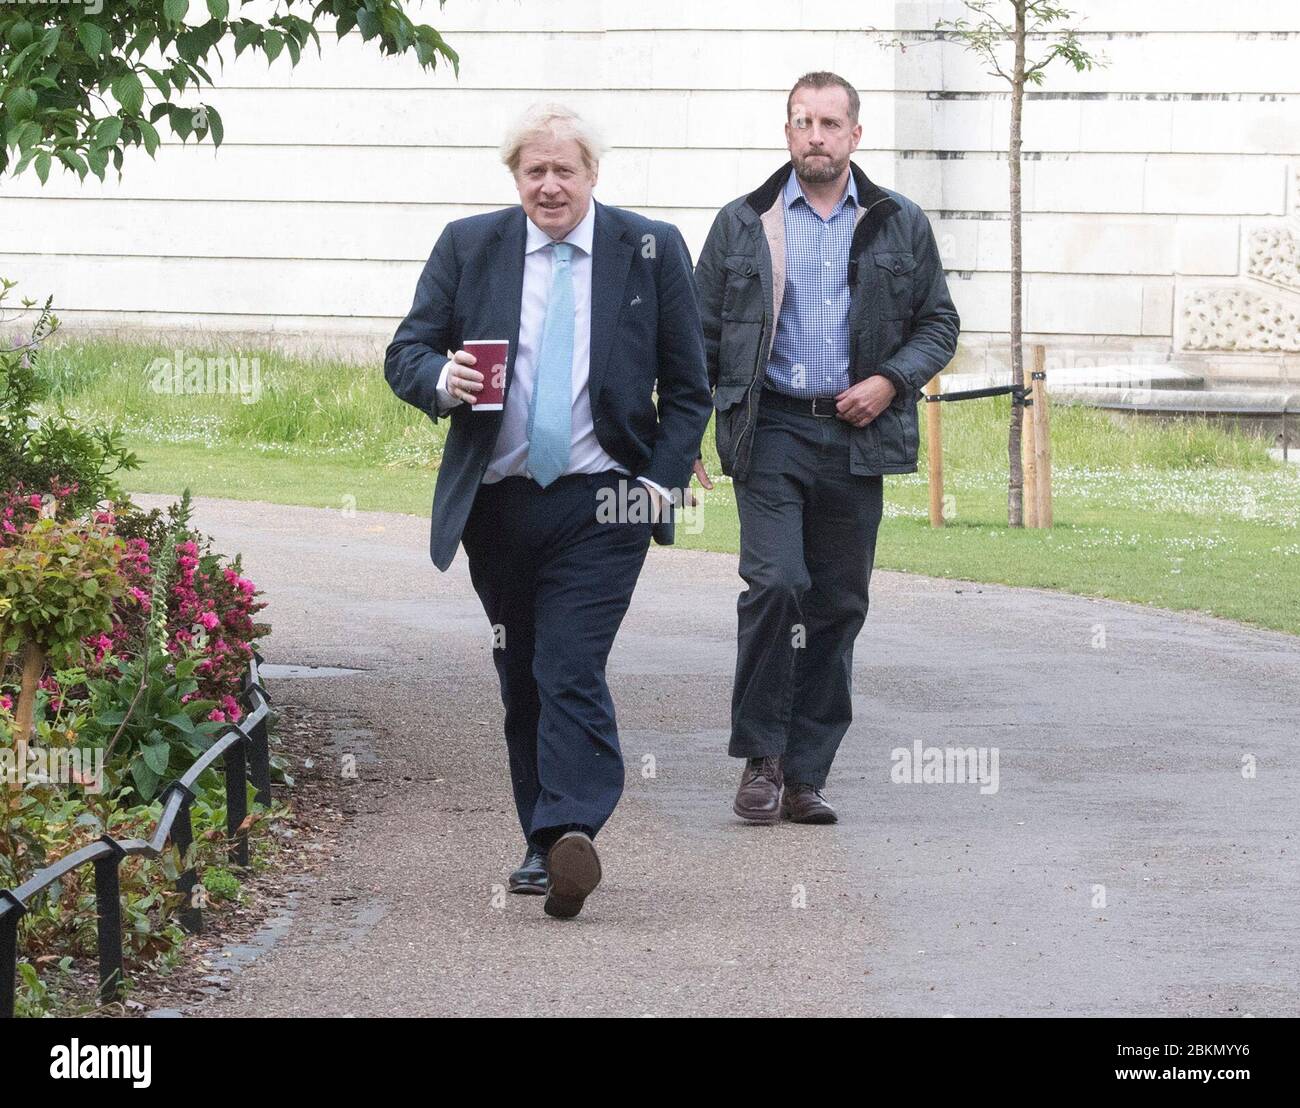 Premierminister Boris Johnson macht einen Morgenspaziergang im St James' Park in London, bevor er in die Downing Street zurückkehrt, während Großbritannien in der siebten Woche der Lockdown eintritt, um die Ausbreitung des Coronavirus zu stoppen. Stockfoto